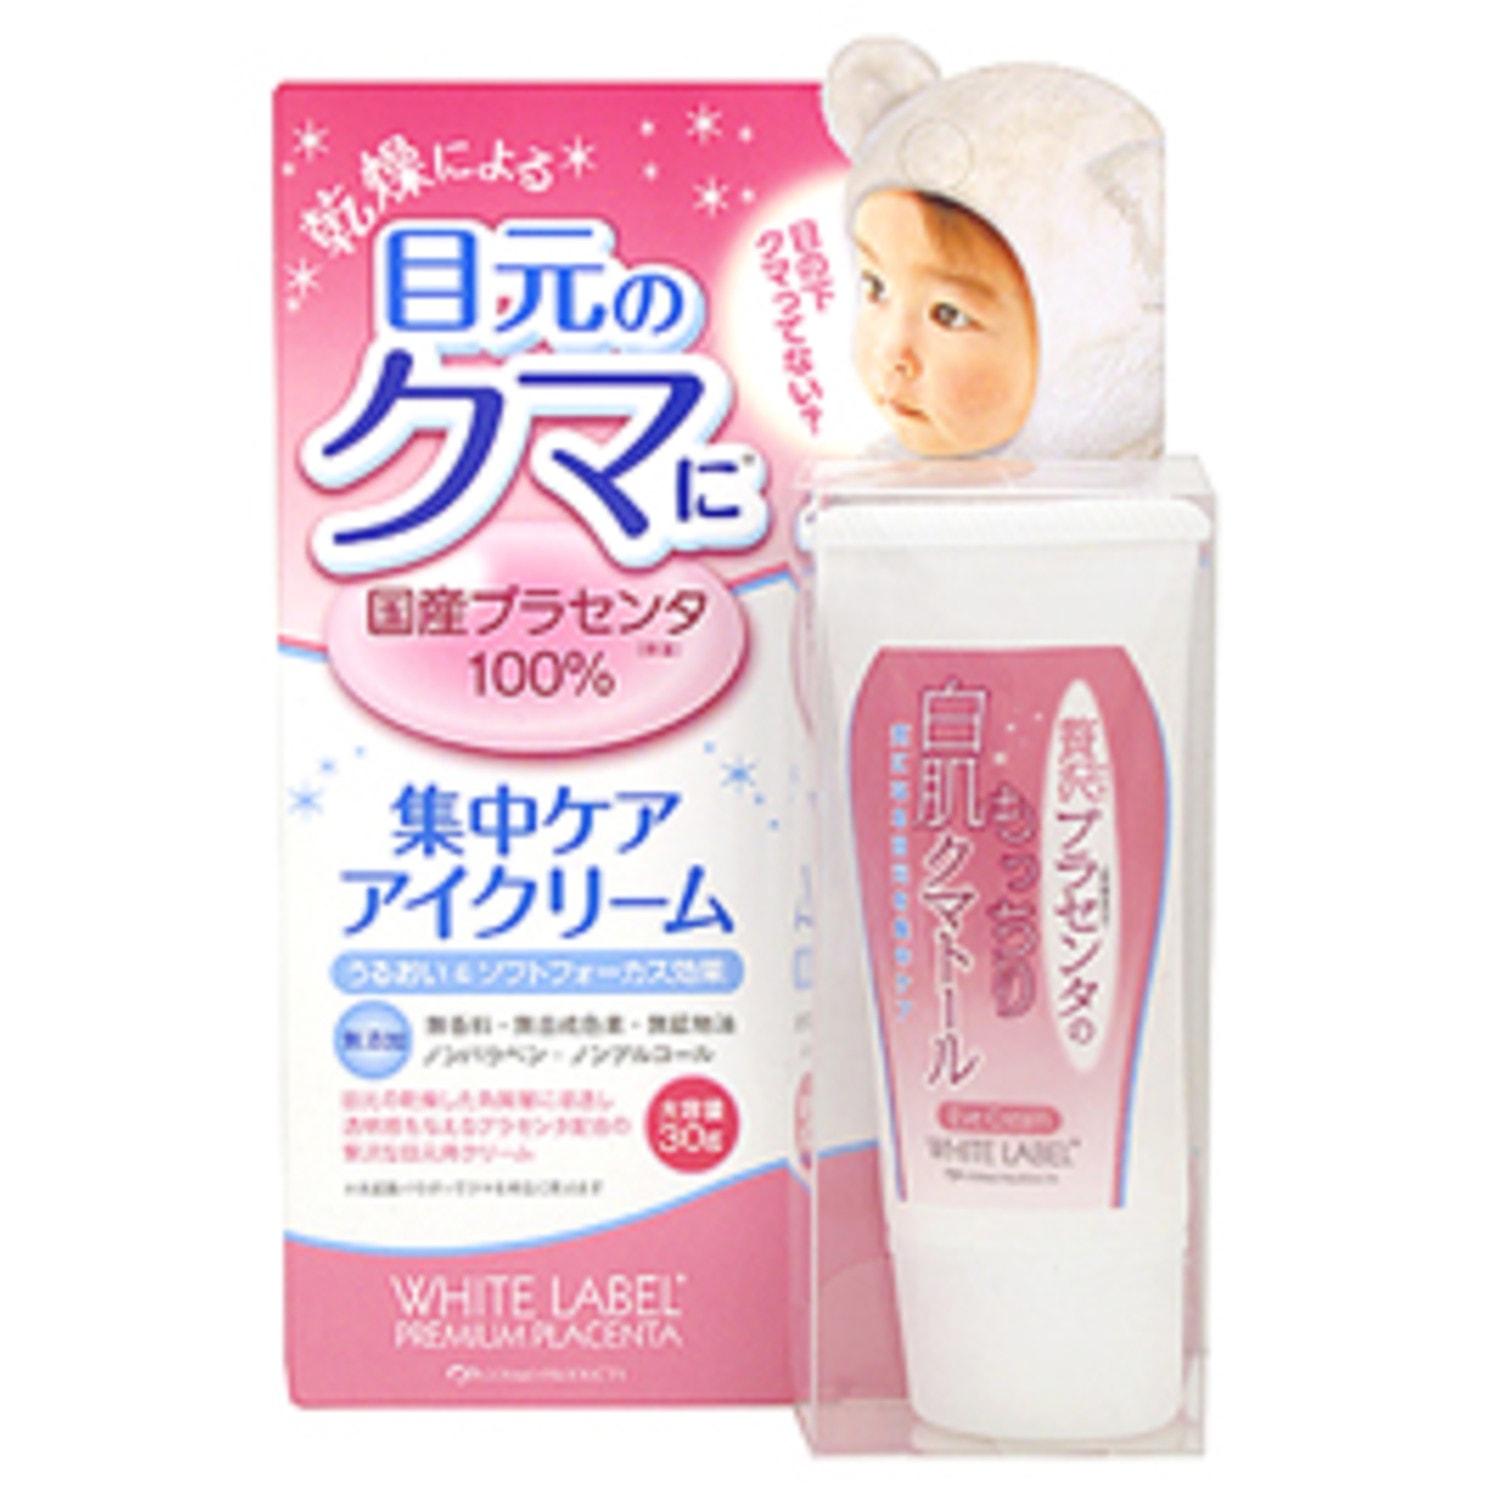 Miccosmo « White Label Premium Placenta Essence Eye Cream» Увлажняющий и подтягивающий крем с плацентой для ухода за кожей вокруг глаз с экстрактом плаценты 30г. / 624809 (3Т)